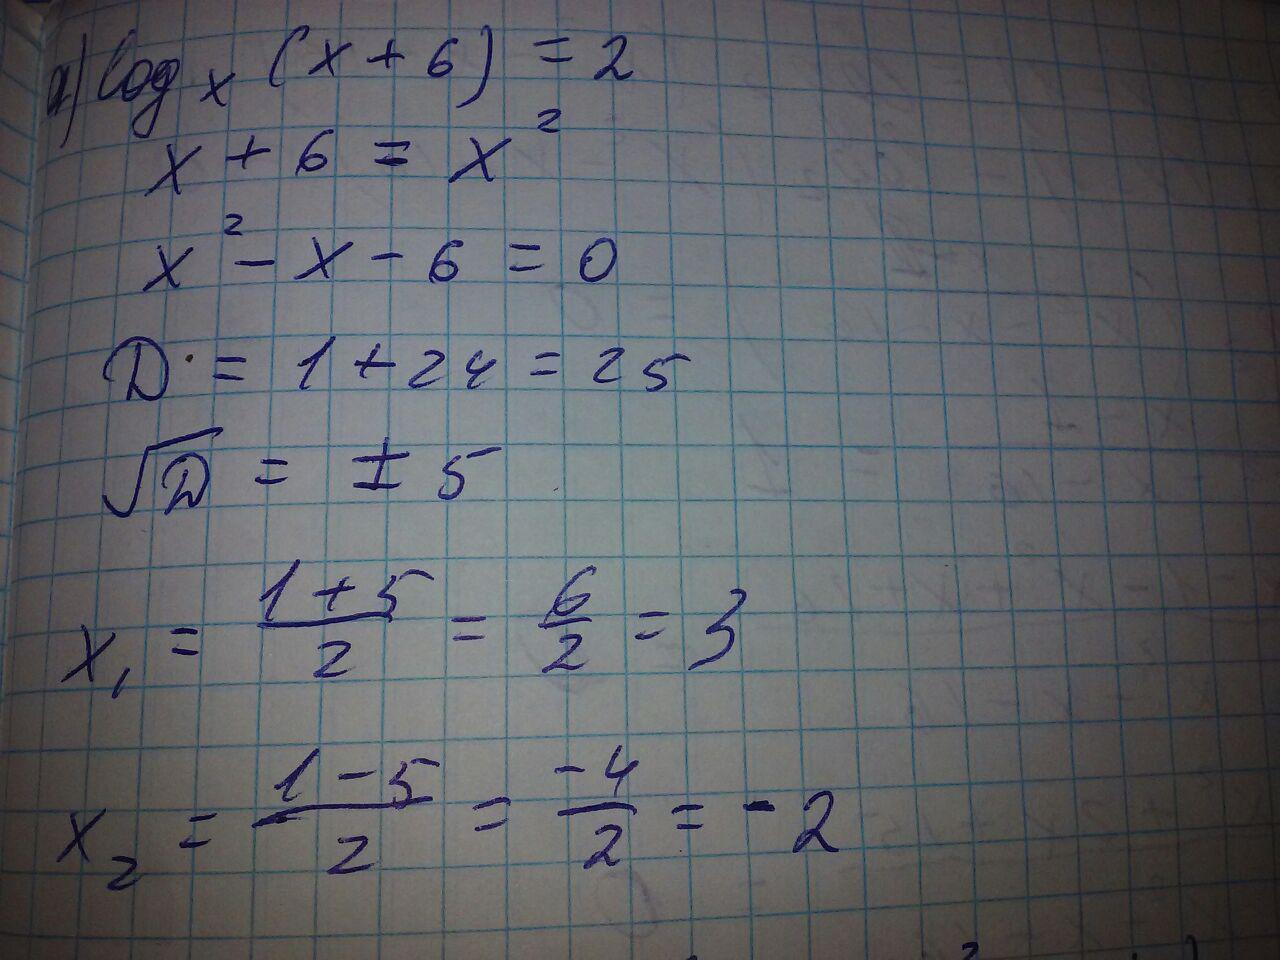 Log 6x 2 5x. Log 2 ( x 2 − x ) = 1. Log 6x2-x-1 2x2-5x+3. X^log2 x. (X-6)^2.